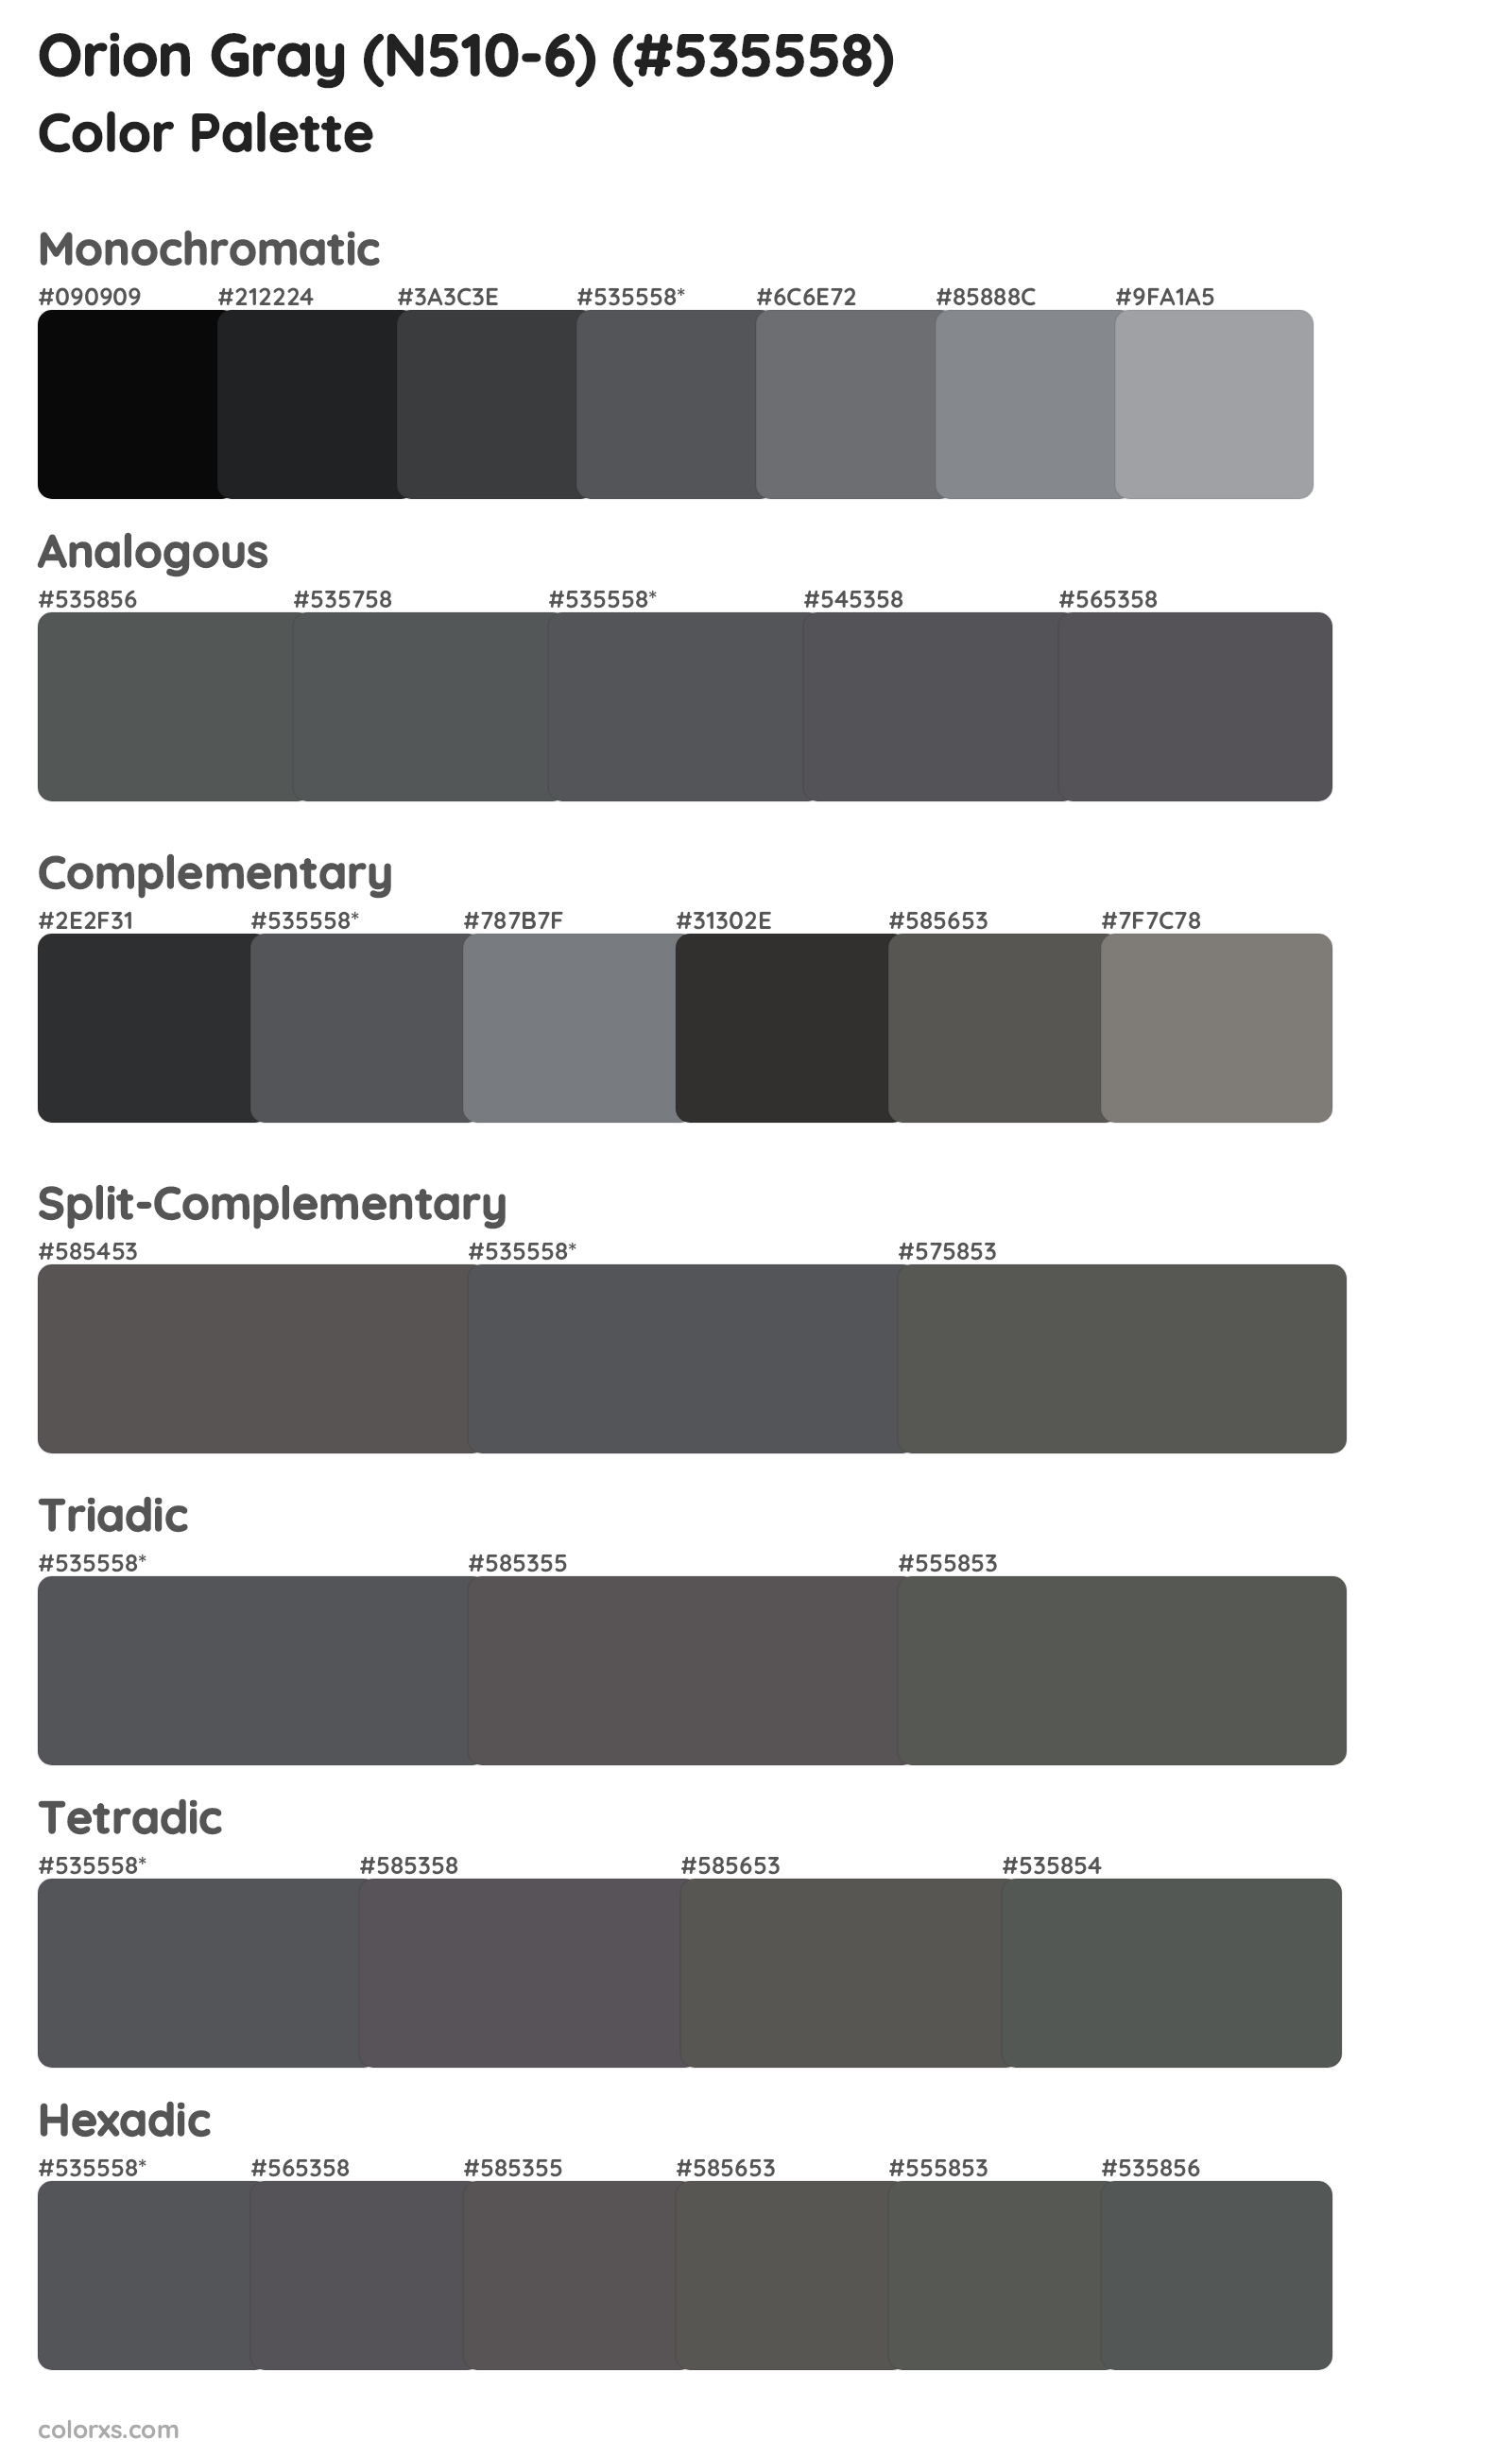 Orion Gray (N510-6) Color Scheme Palettes